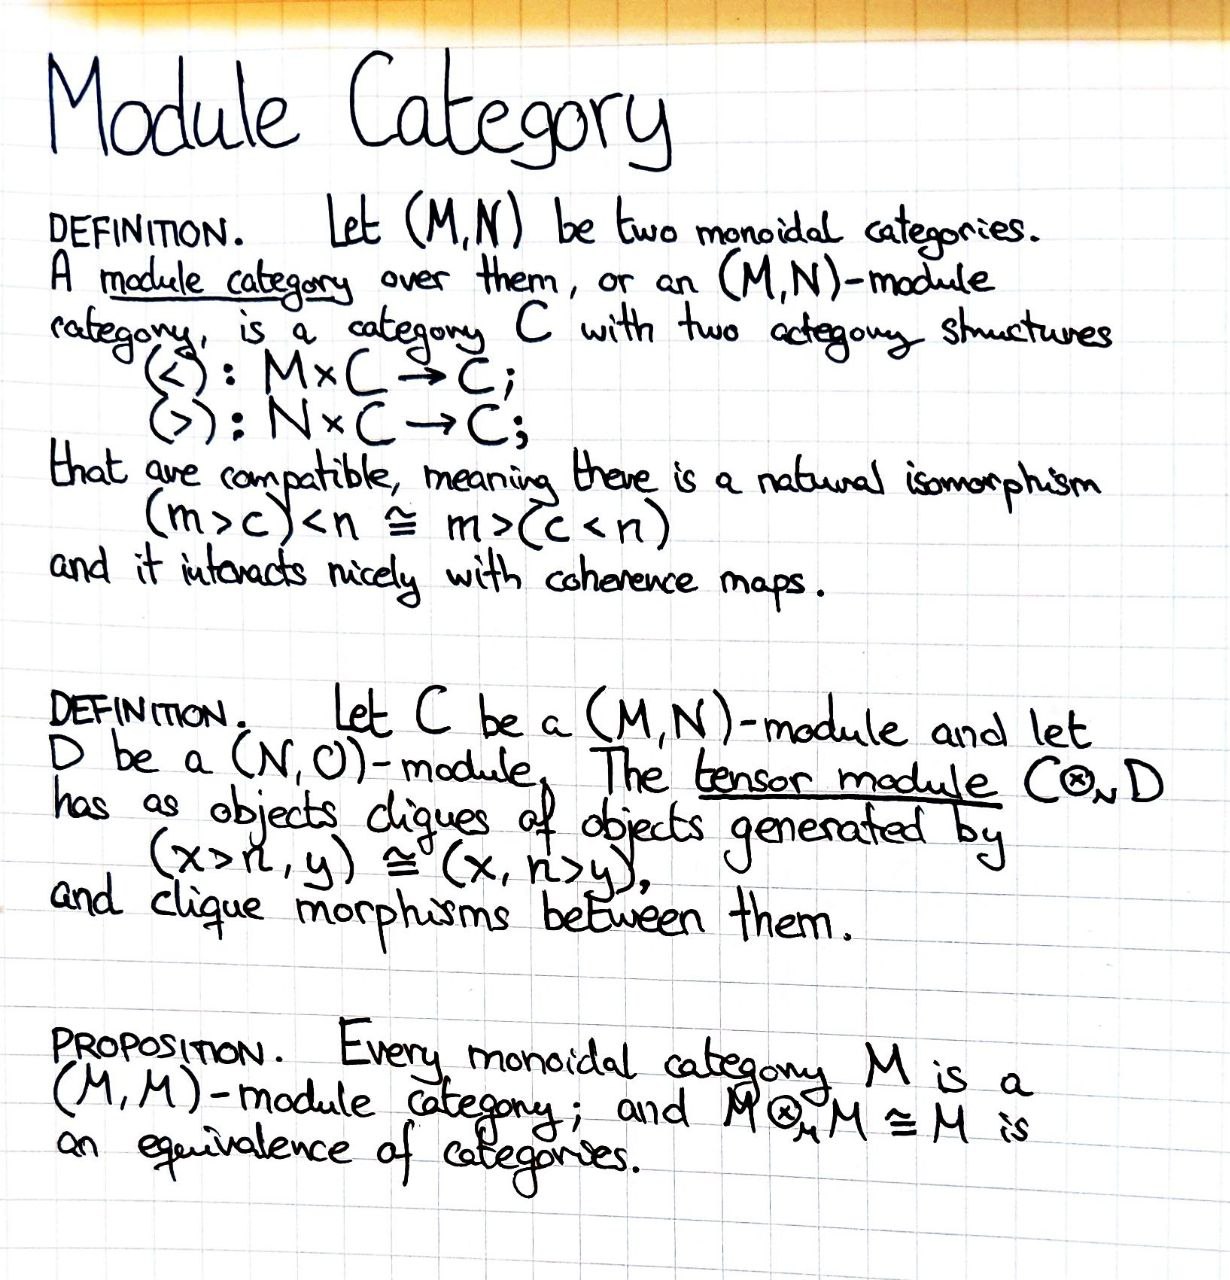 module-category